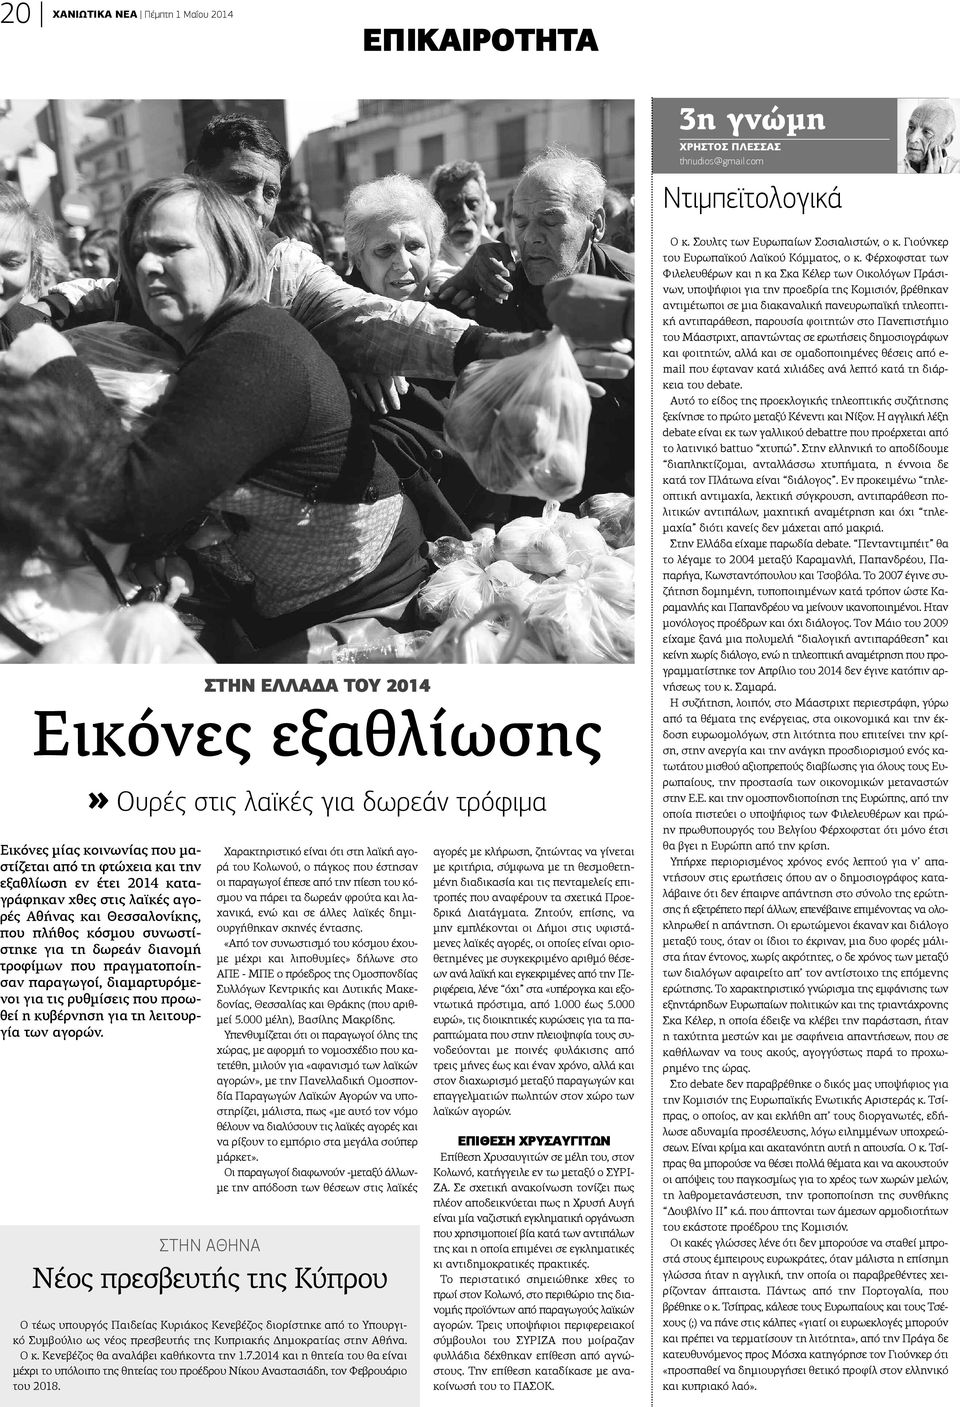 στις λαϊκές αγορές Αθήνας και Θεσσαλονίκης, ου πλήθος κόσμου συνωστίτηκε για τη δωρεάν διανομή ροφίμων που πραγματοποίηαν παραγωγοί, διαμαρτυρόμεοι για τις ρυθμίσεις που προωεί η κυβέρνηση για τη